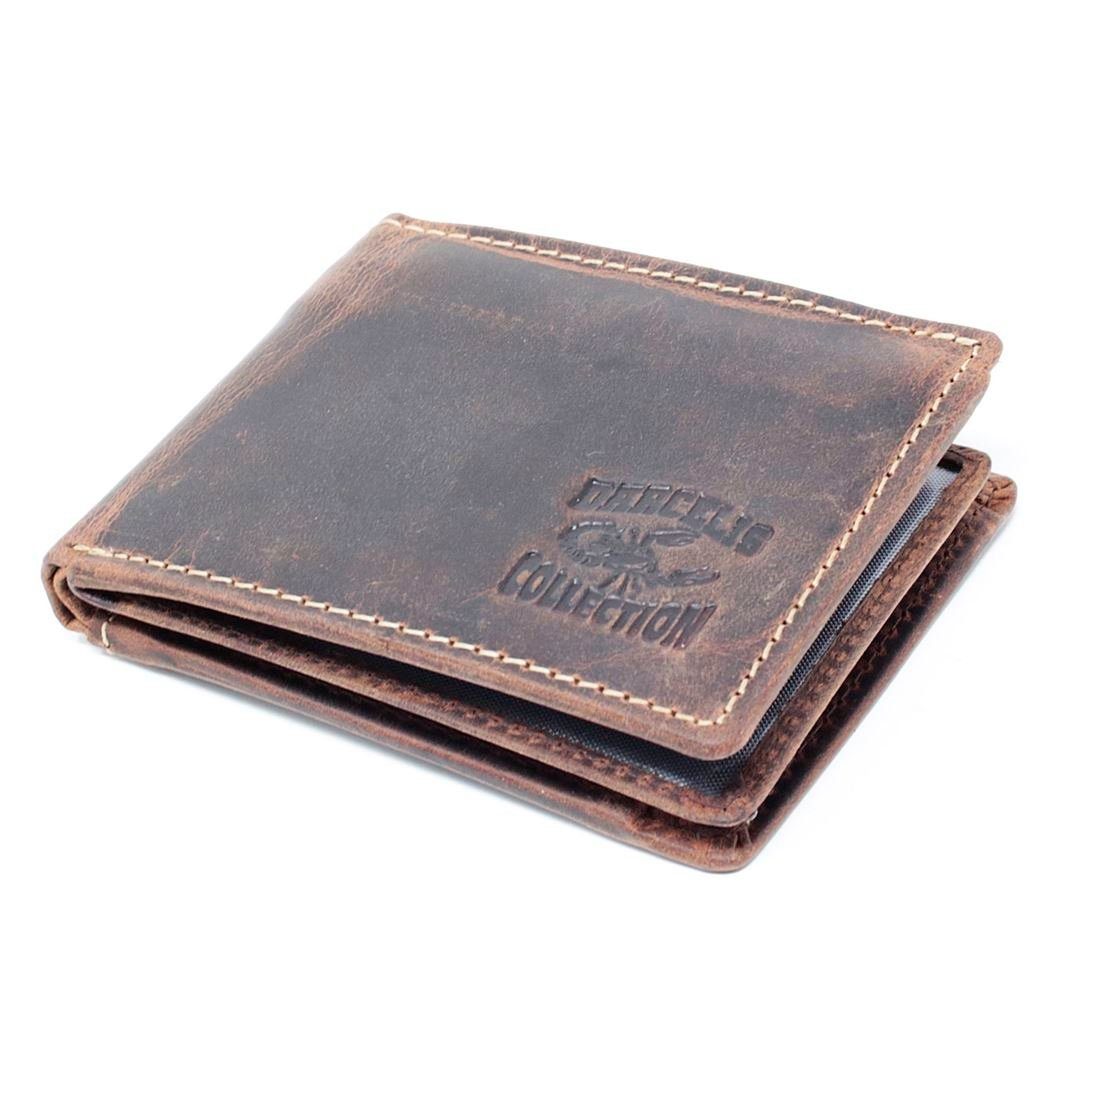 Geldbörse Herren Portemonnaie, SHG Schutz Brieftasche Börse Lederbörse mit Münzfach Büffelleder RFID Männerbörse Leder